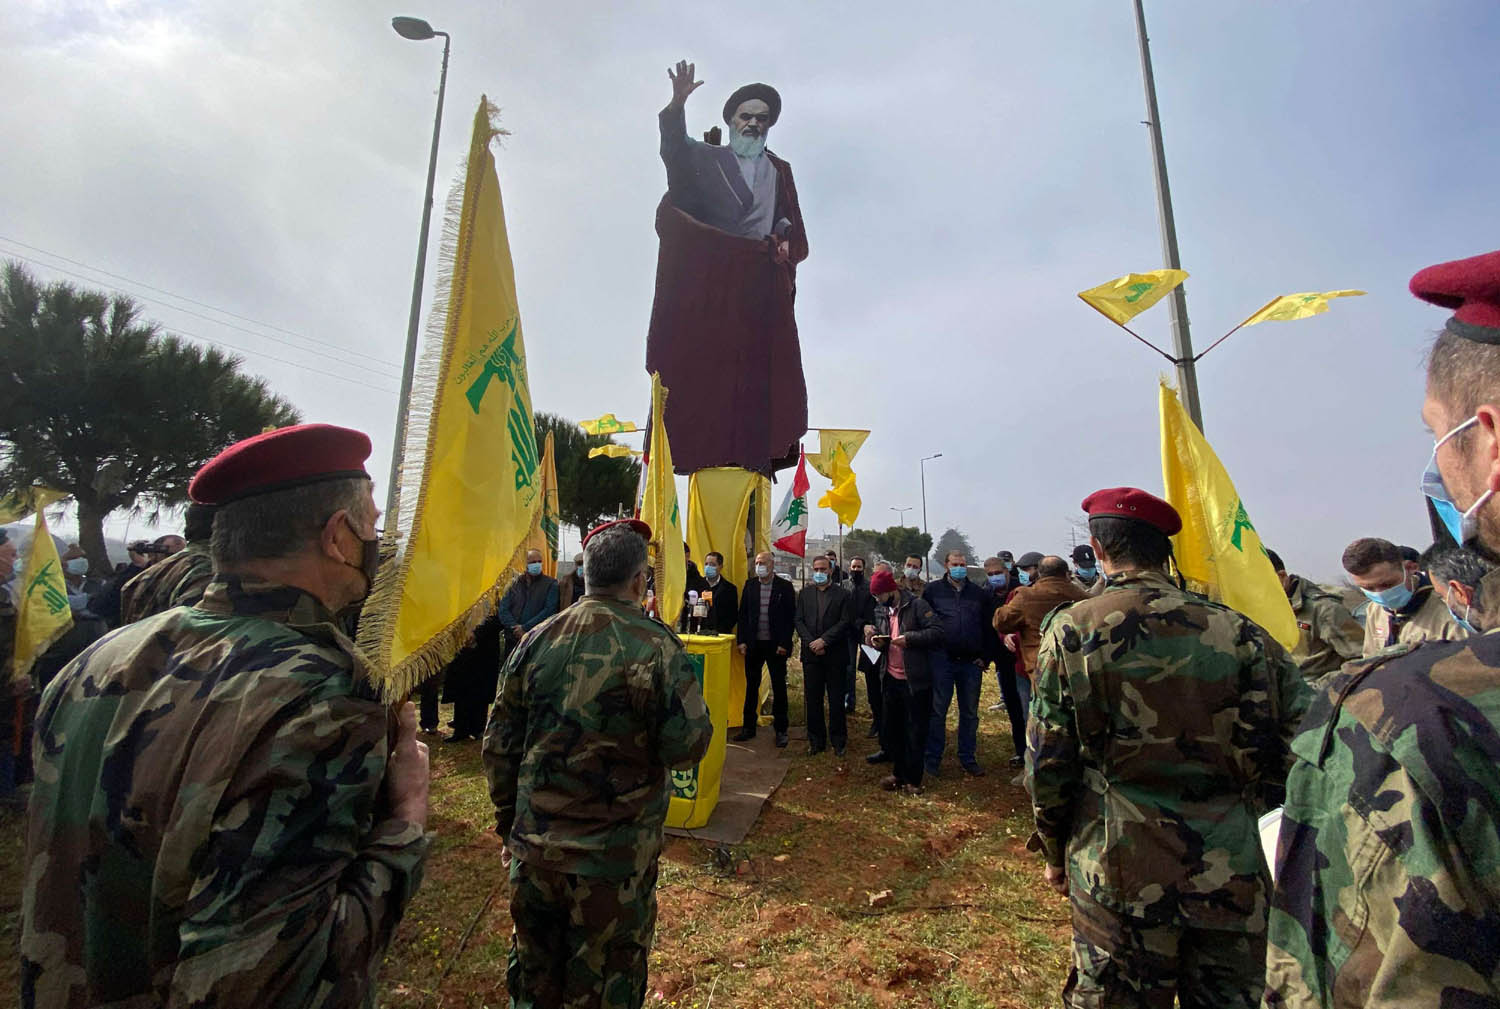 مقاتلون من حزب الله يحتفلون بذكرى الخميني في جنوب لبنان